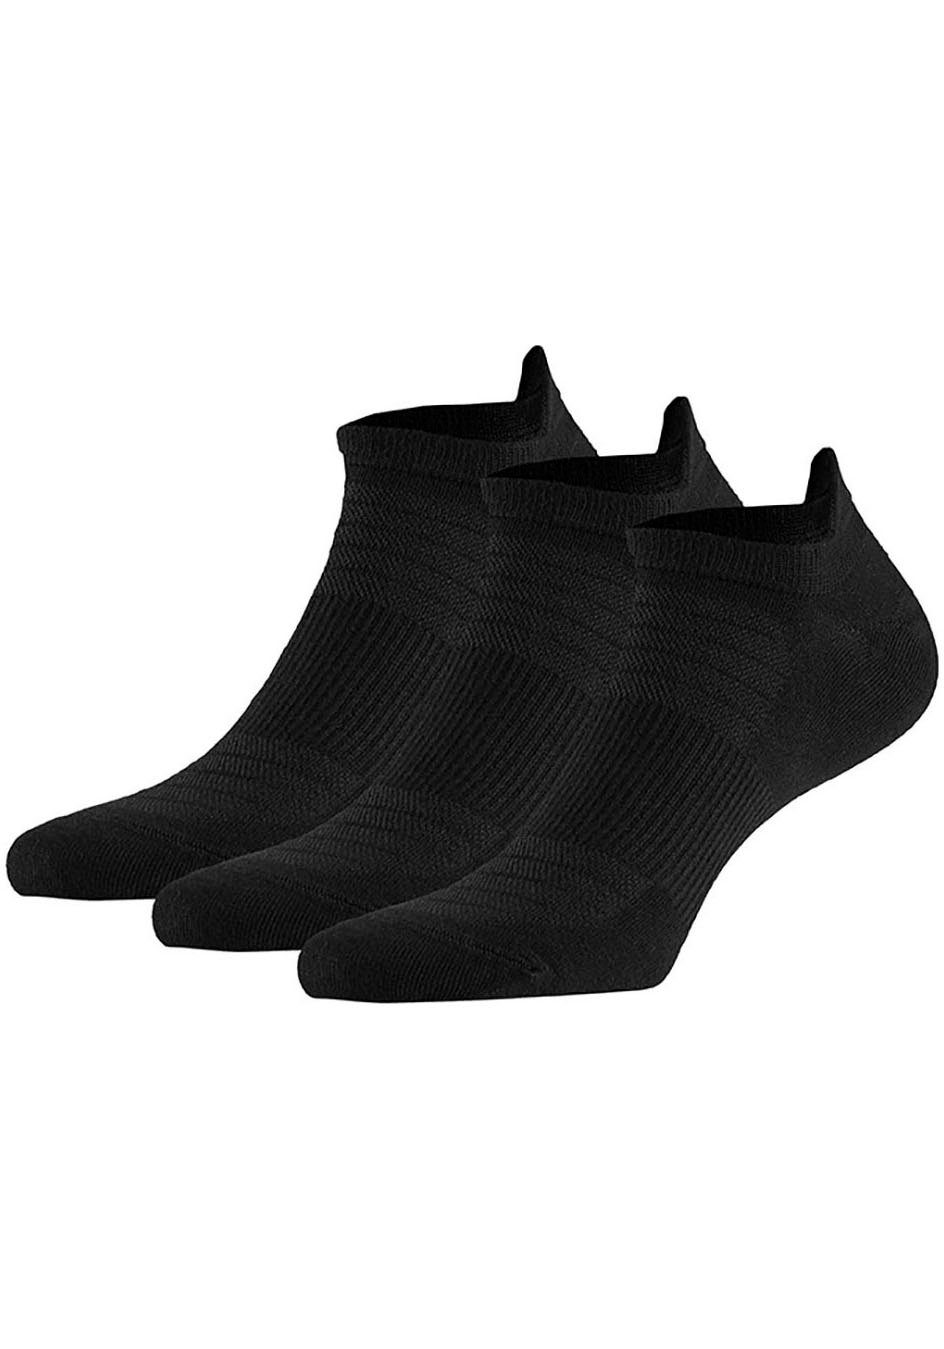 XTREME sockswear Enkelsokken (6 paar)